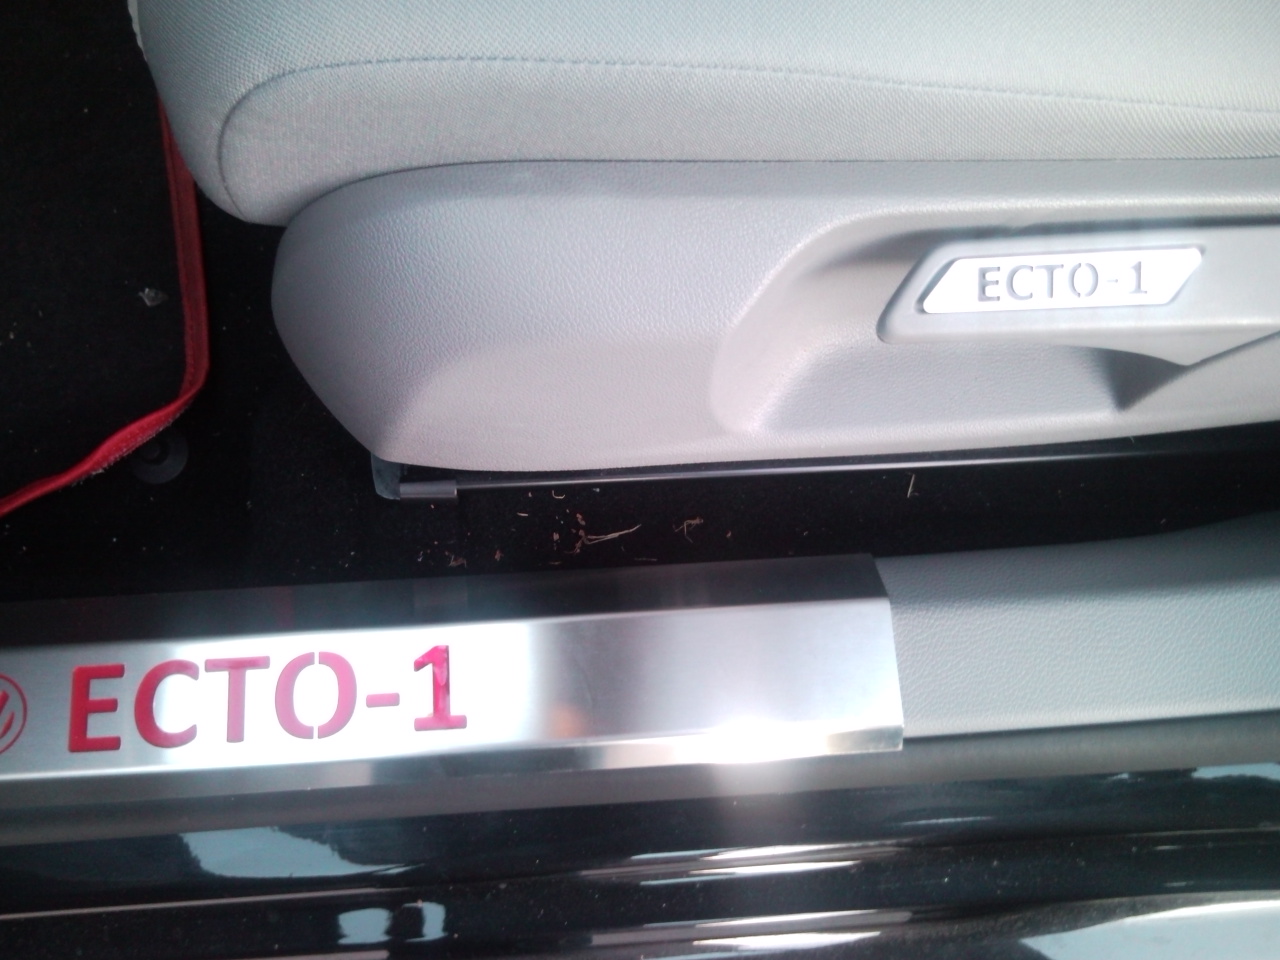 Inserto sedile + battitacco personalizzati ECTO-1
Thanks to Riddick
